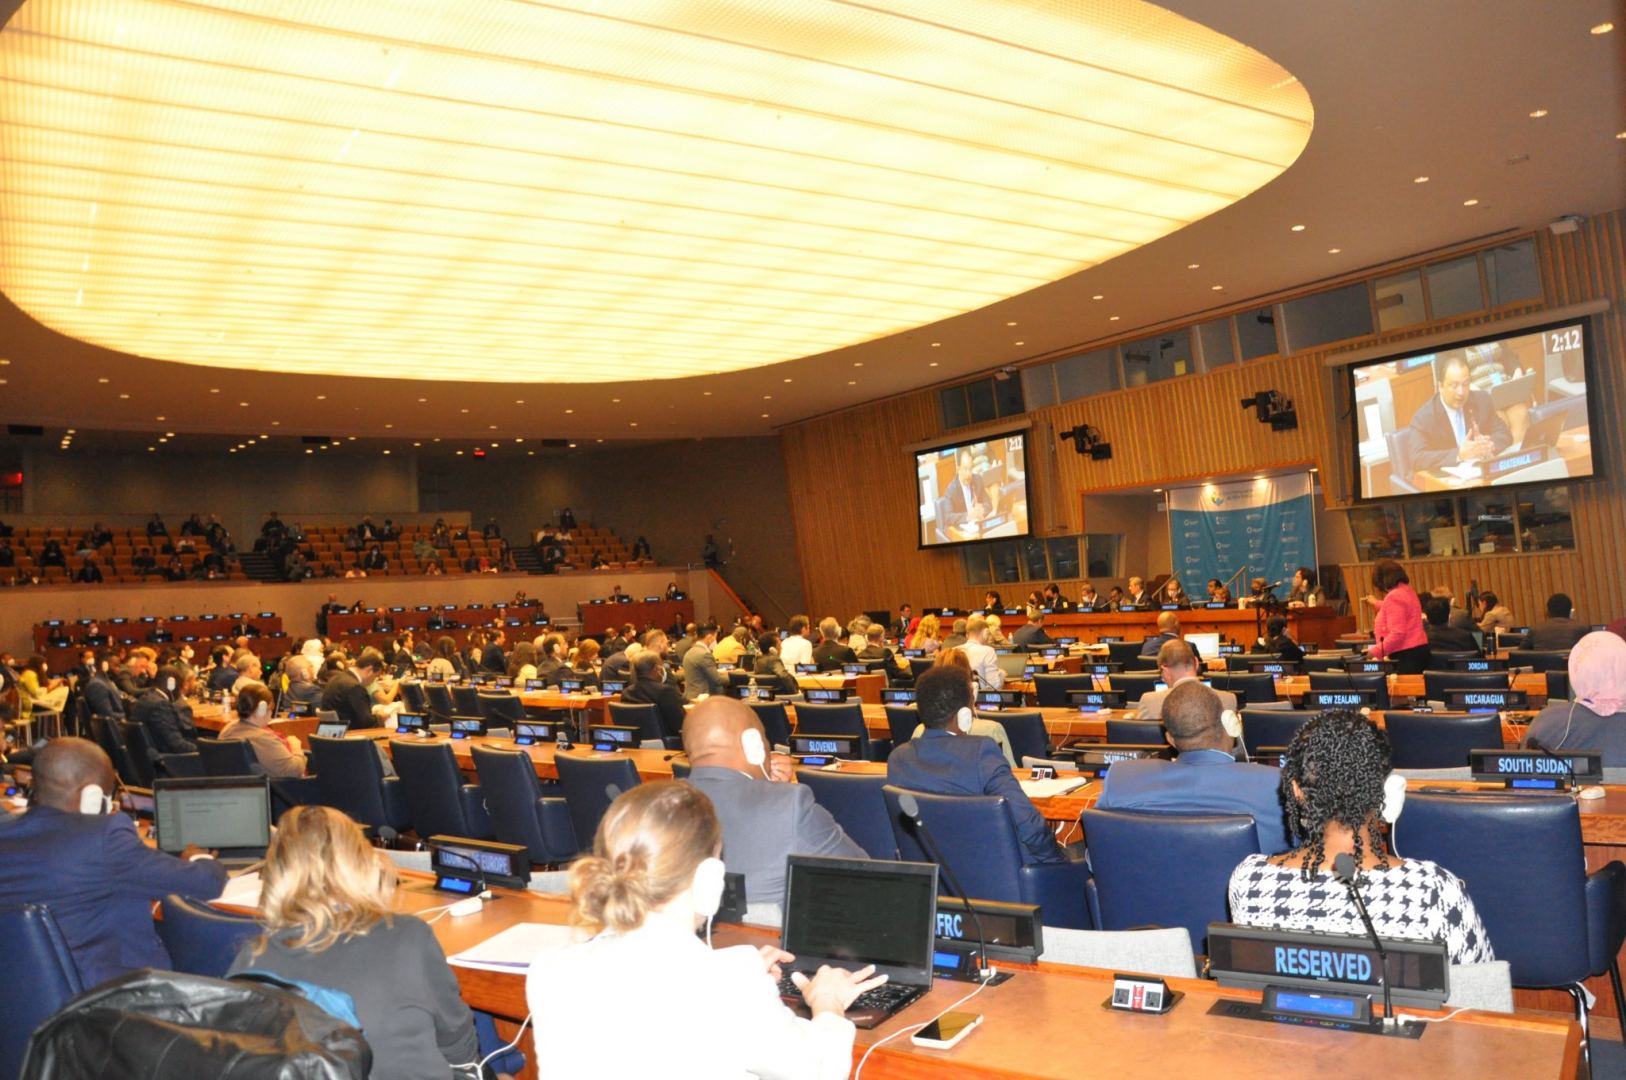 Азербайджан стал сопредседателем круглого стола на Форуме по обзору международной миграции в Нью-Йорке (ФОТО)